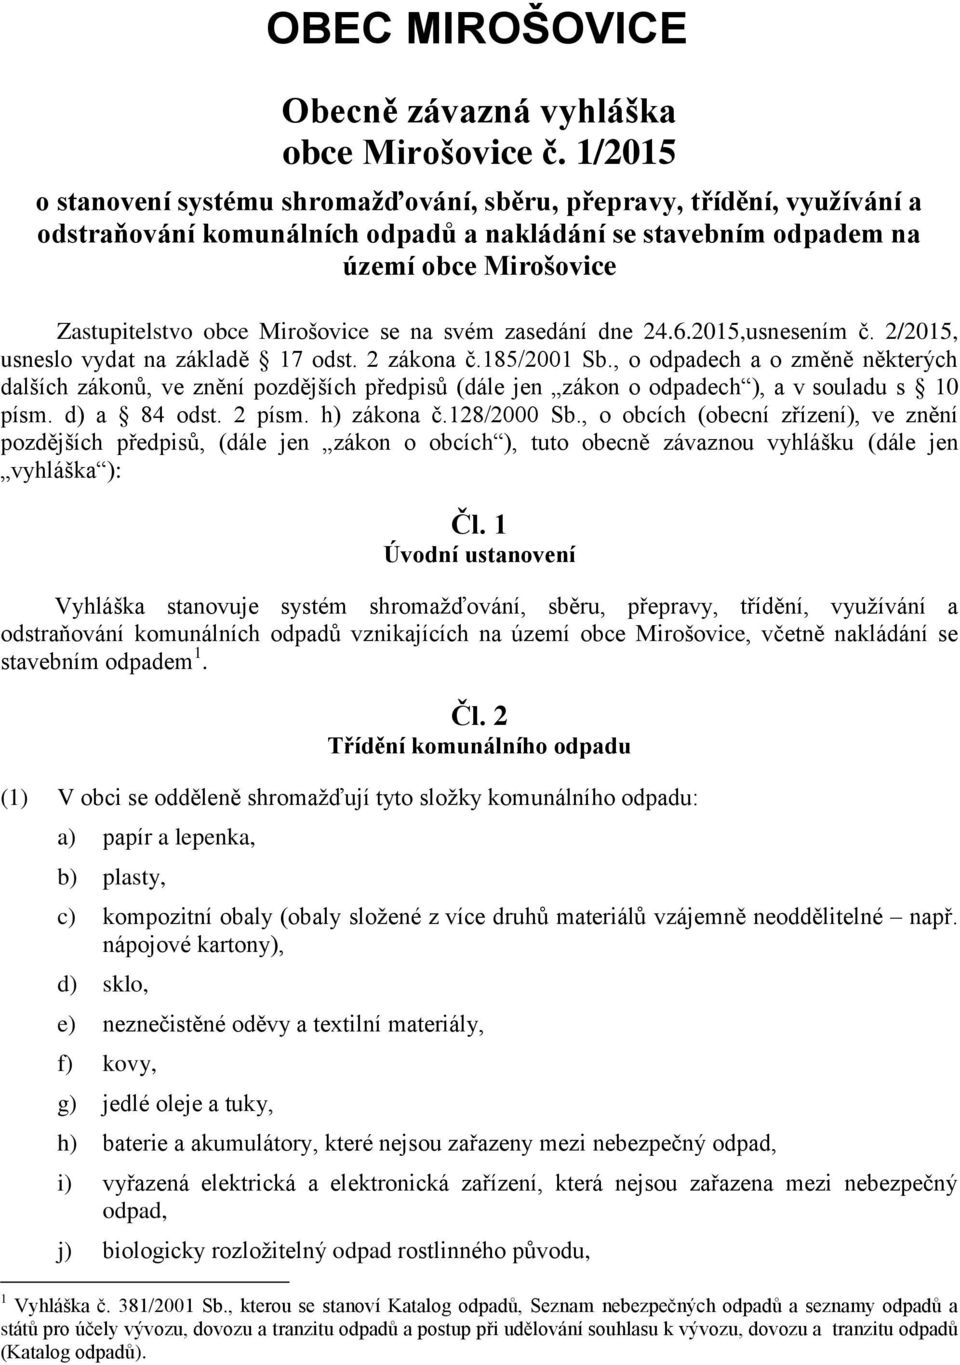 Mirošovice se na svém zasedání dne 24.6.2015,usnesením č. 2/2015, usneslo vydat na základě 17 odst. 2 zákona č.185/2001 Sb.